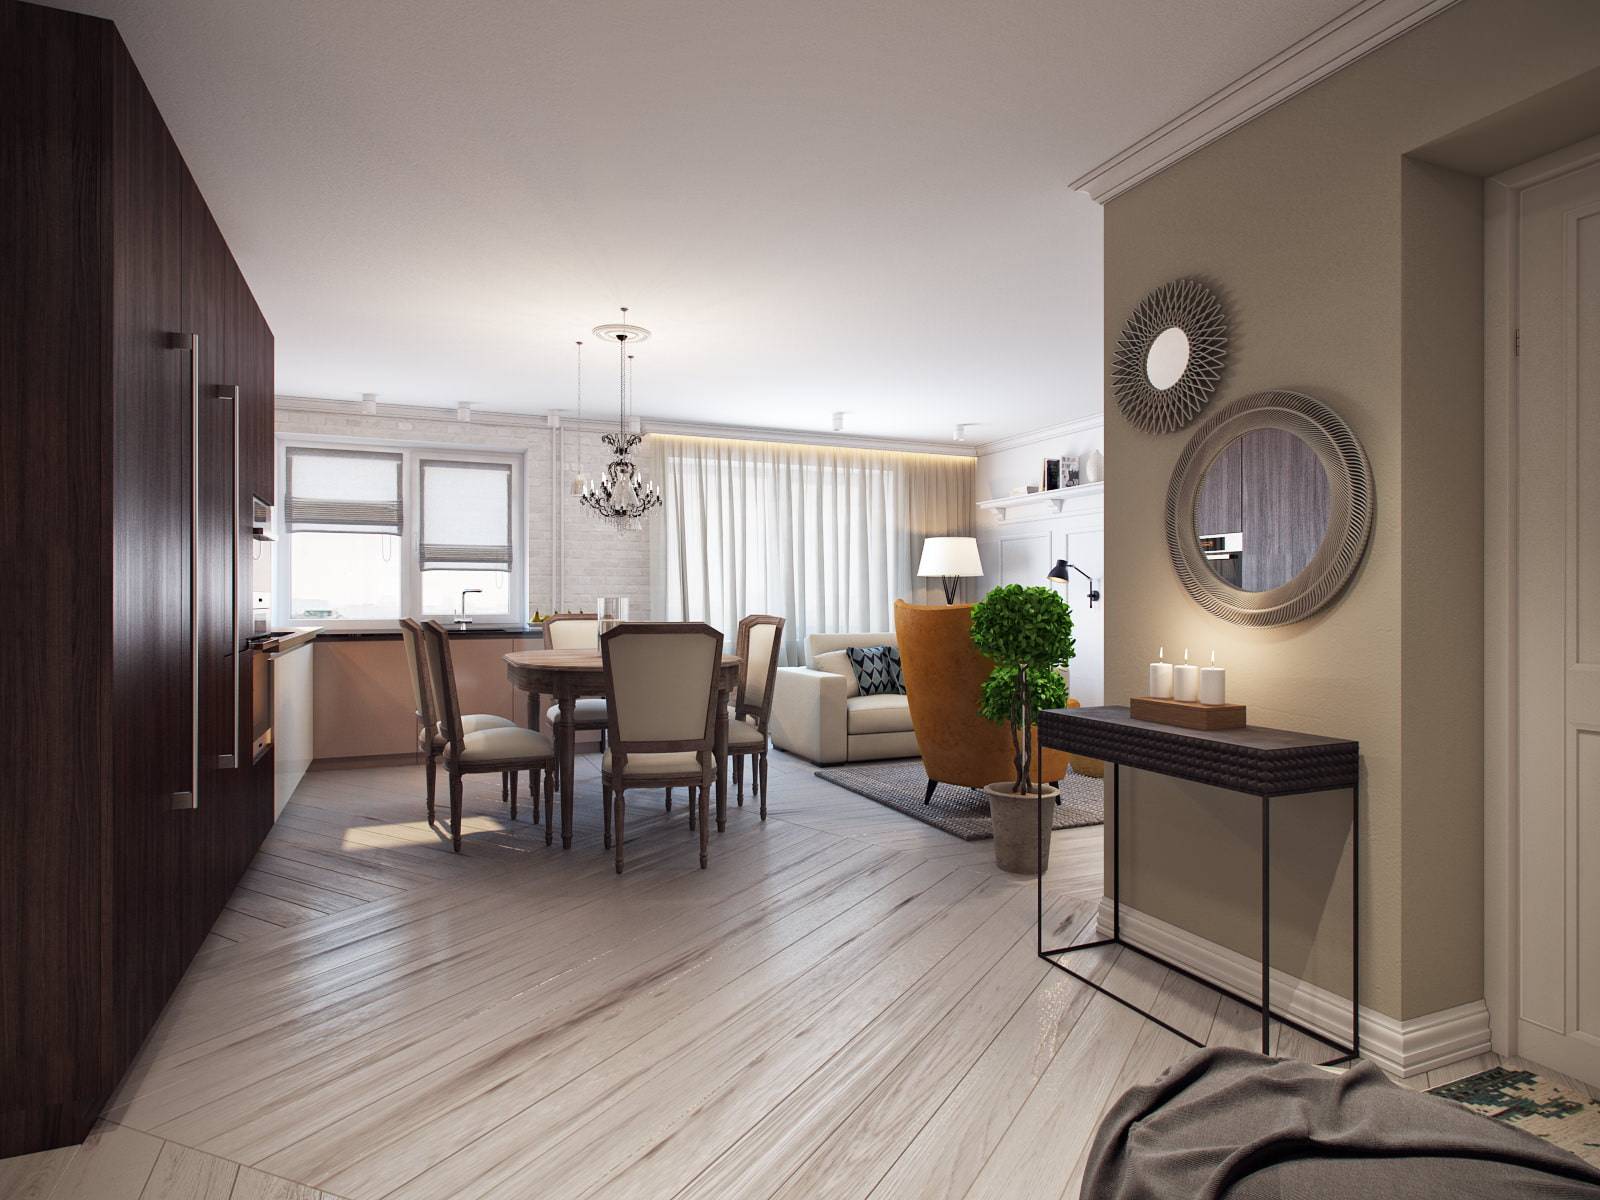 Дизайн трёхкомнатной квартиры 80 кв м в санкт-петербурге — интерьер квартиры в 80 кв м (фото и планировка)